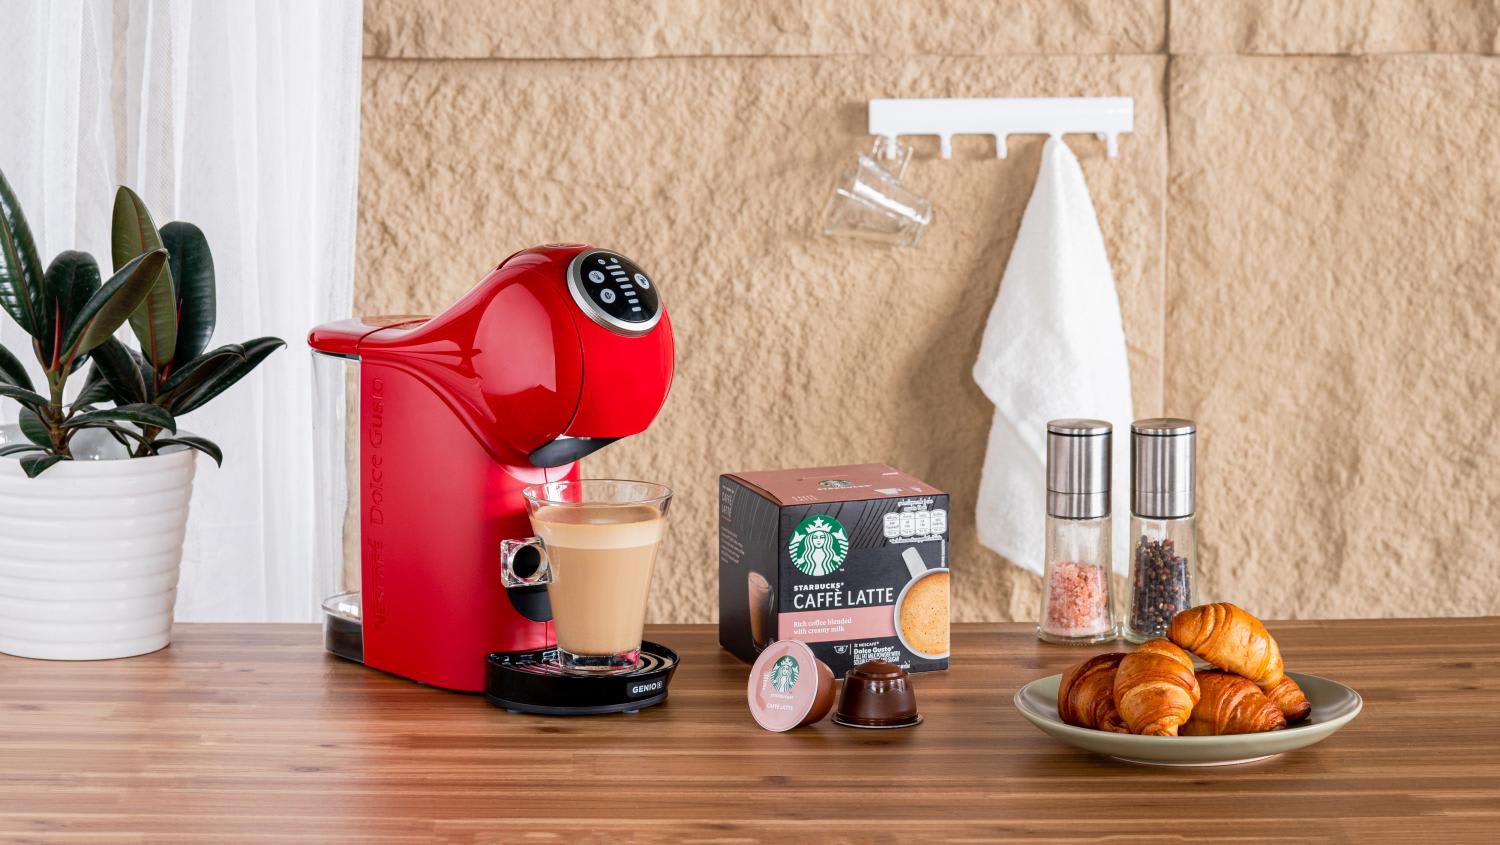 108 Capsules Starbucks by Nescafé Dolce Gusto Espresso Roast Coffee